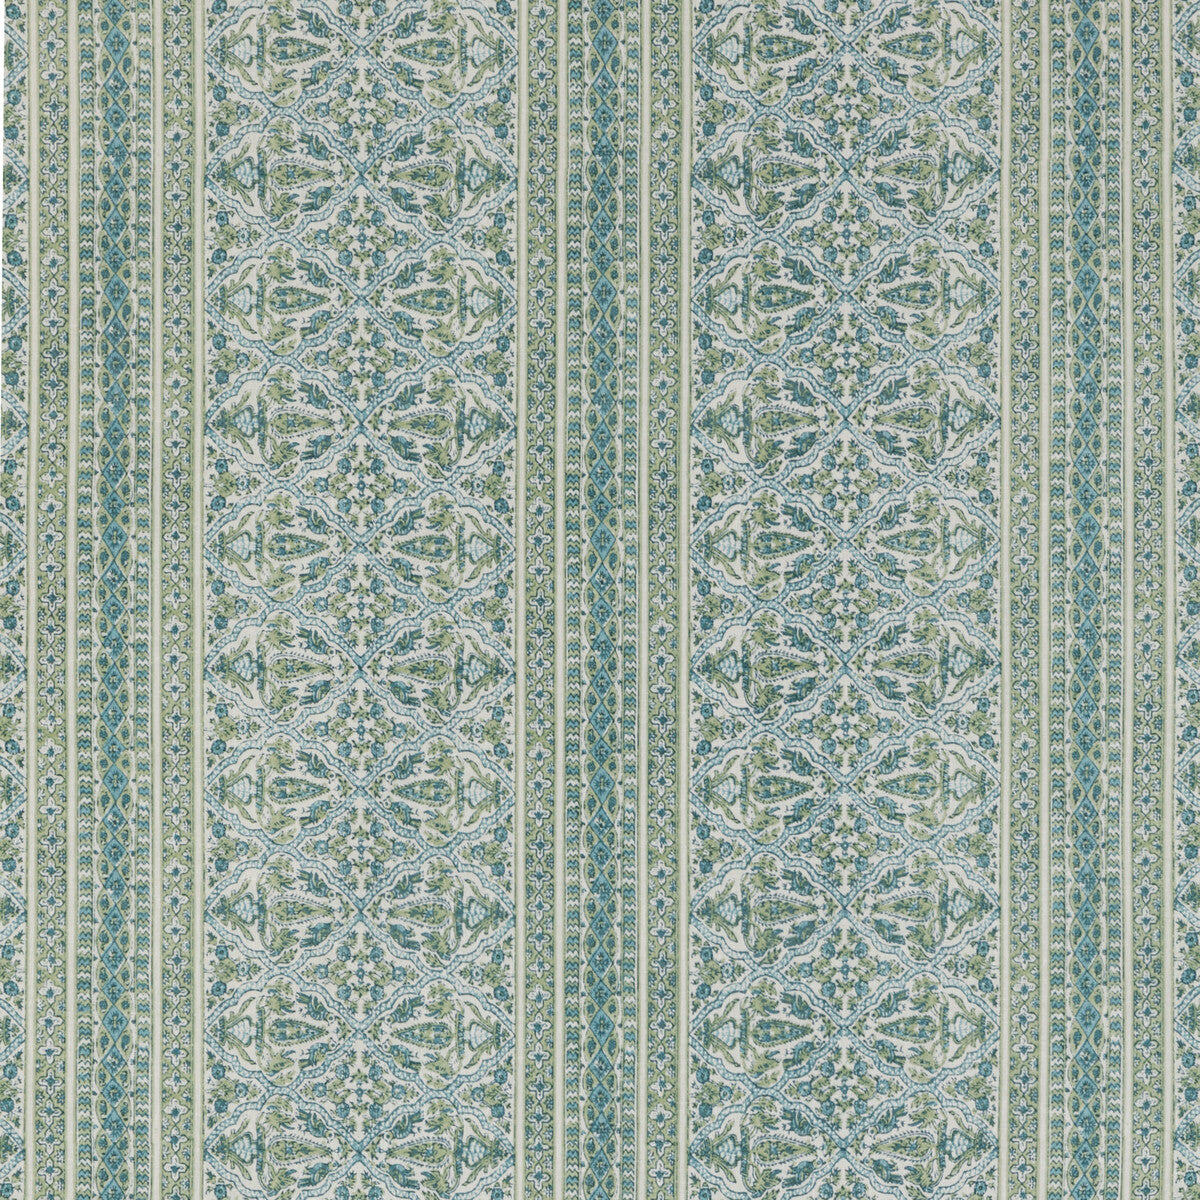 Kravet Basics fabric in mysore-30 color - pattern MYSORE.30.0 - by Kravet Basics in the L&